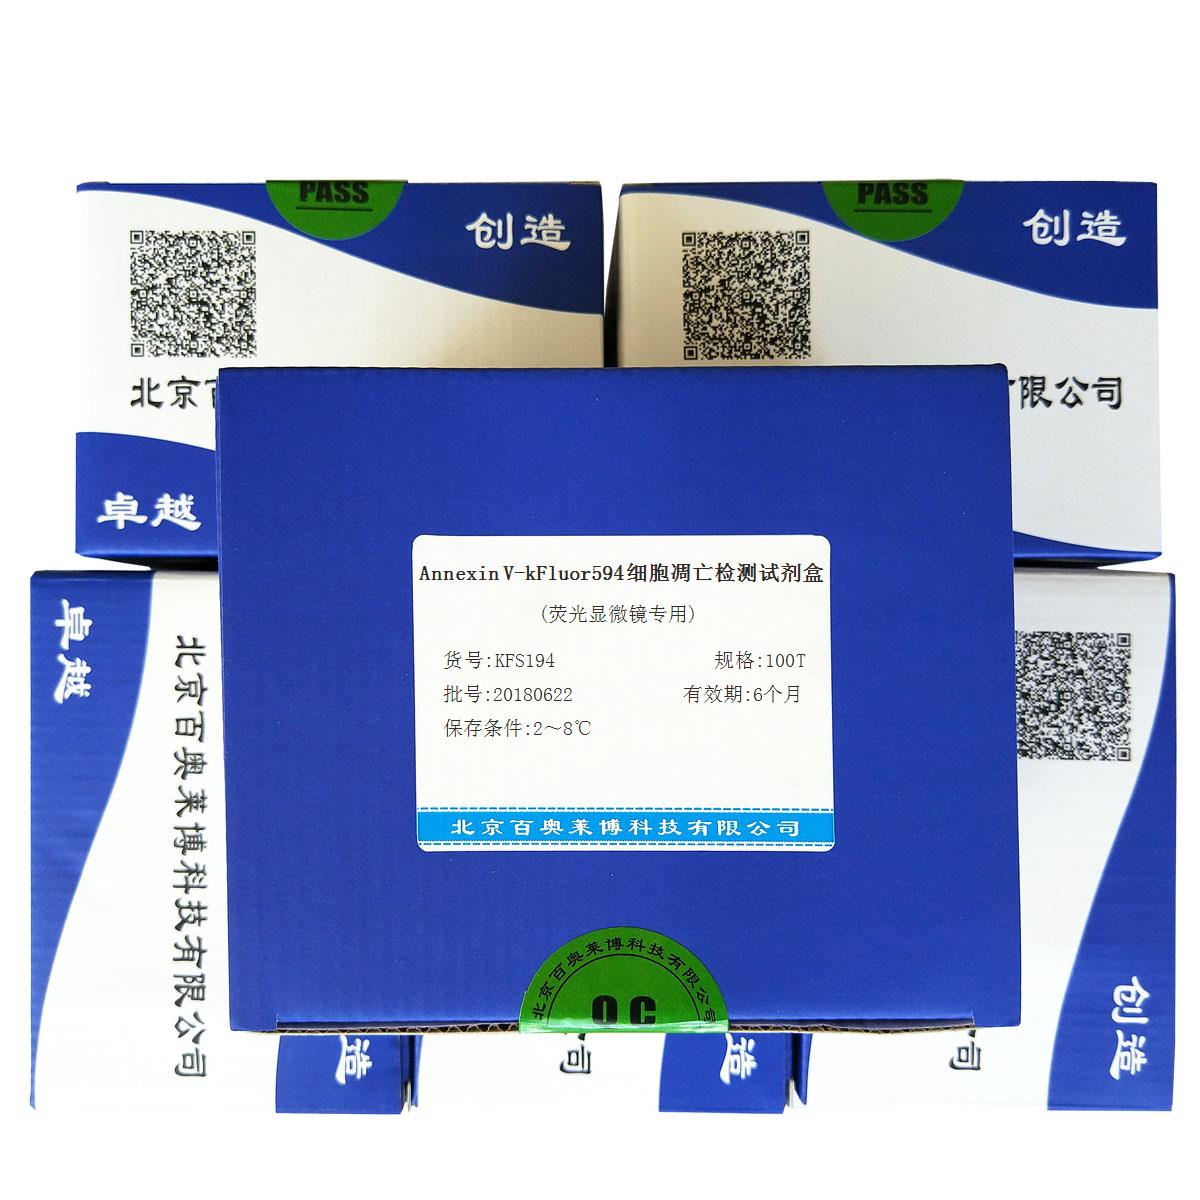 北京现货Annexin V-kFluor594细胞凋亡检测试剂盒(荧光显微镜专用)怎么卖